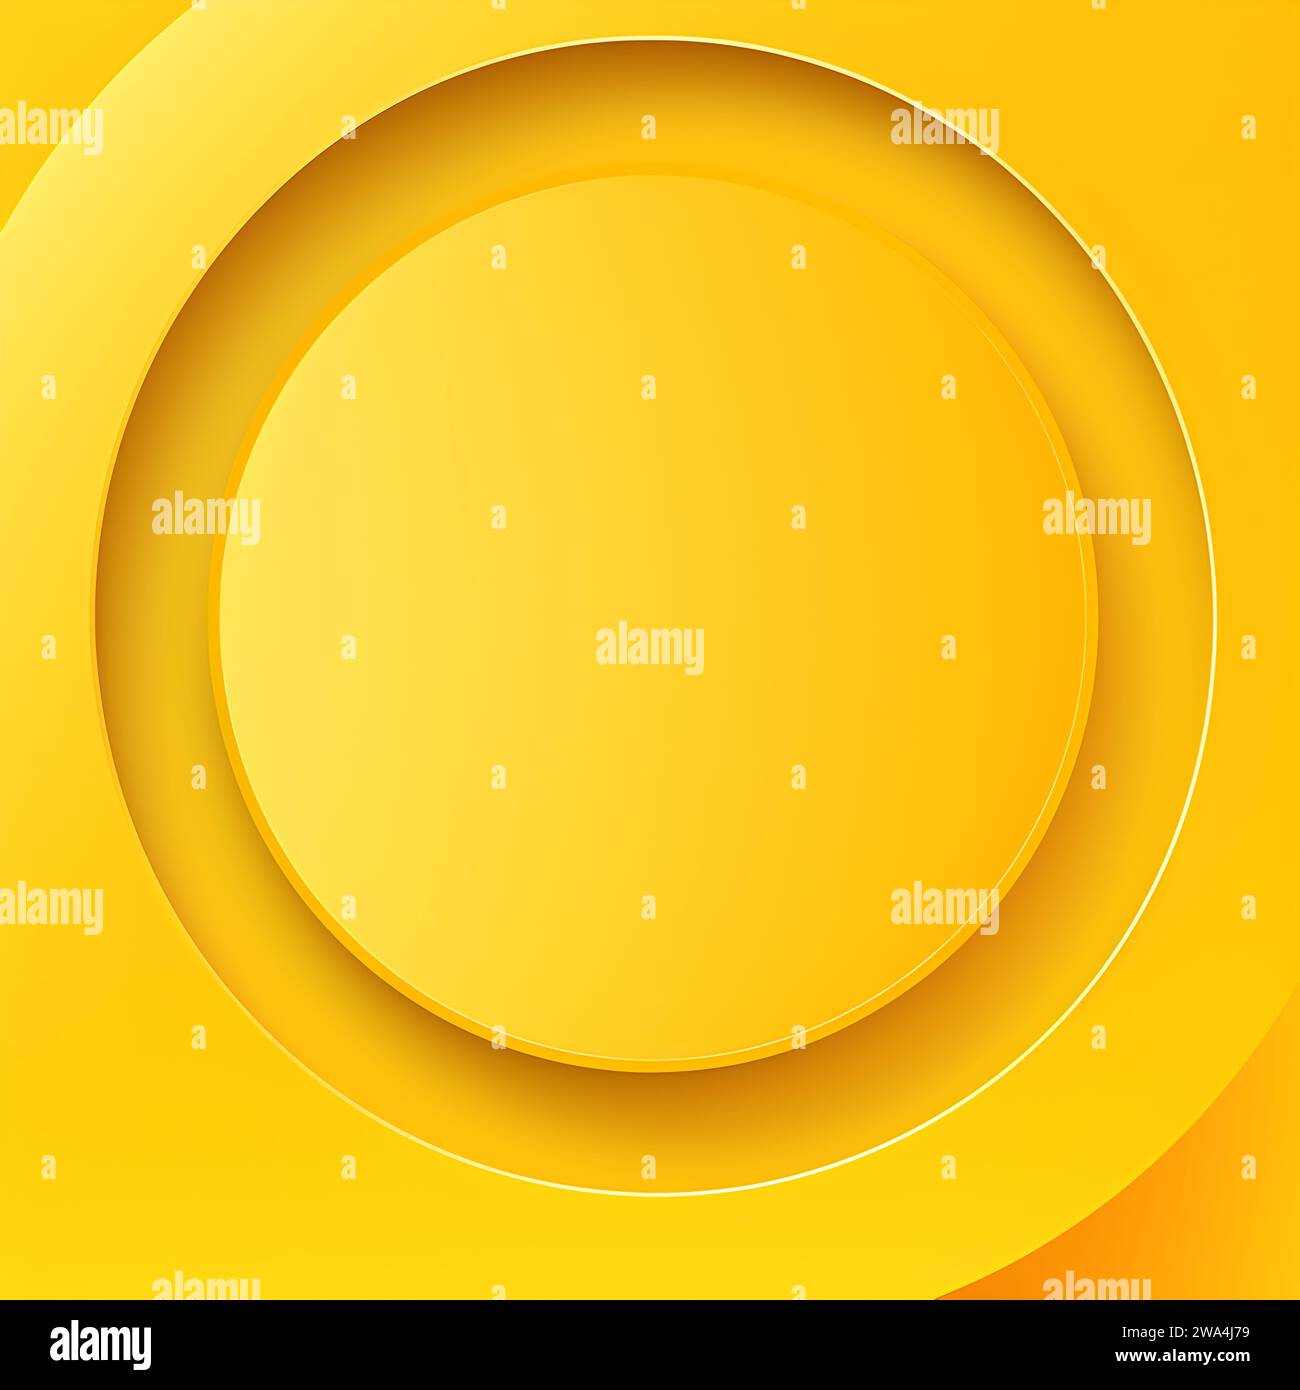 Dégradé fond de cercle jaune abstrait géométrique moderne avec espace vide au milieu Banque D'Images